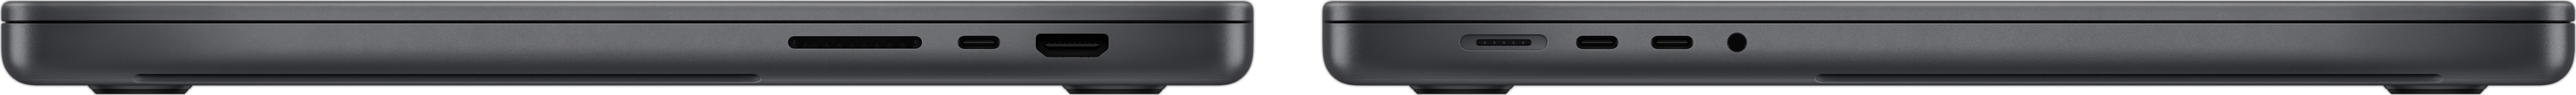 Vue latérale du MacBook Pro, montrant le lecteur de carte SDXC, trois ports Thunderbolt 4, le port HDMI, le port de charge MagSafe 3 et la prise casque.